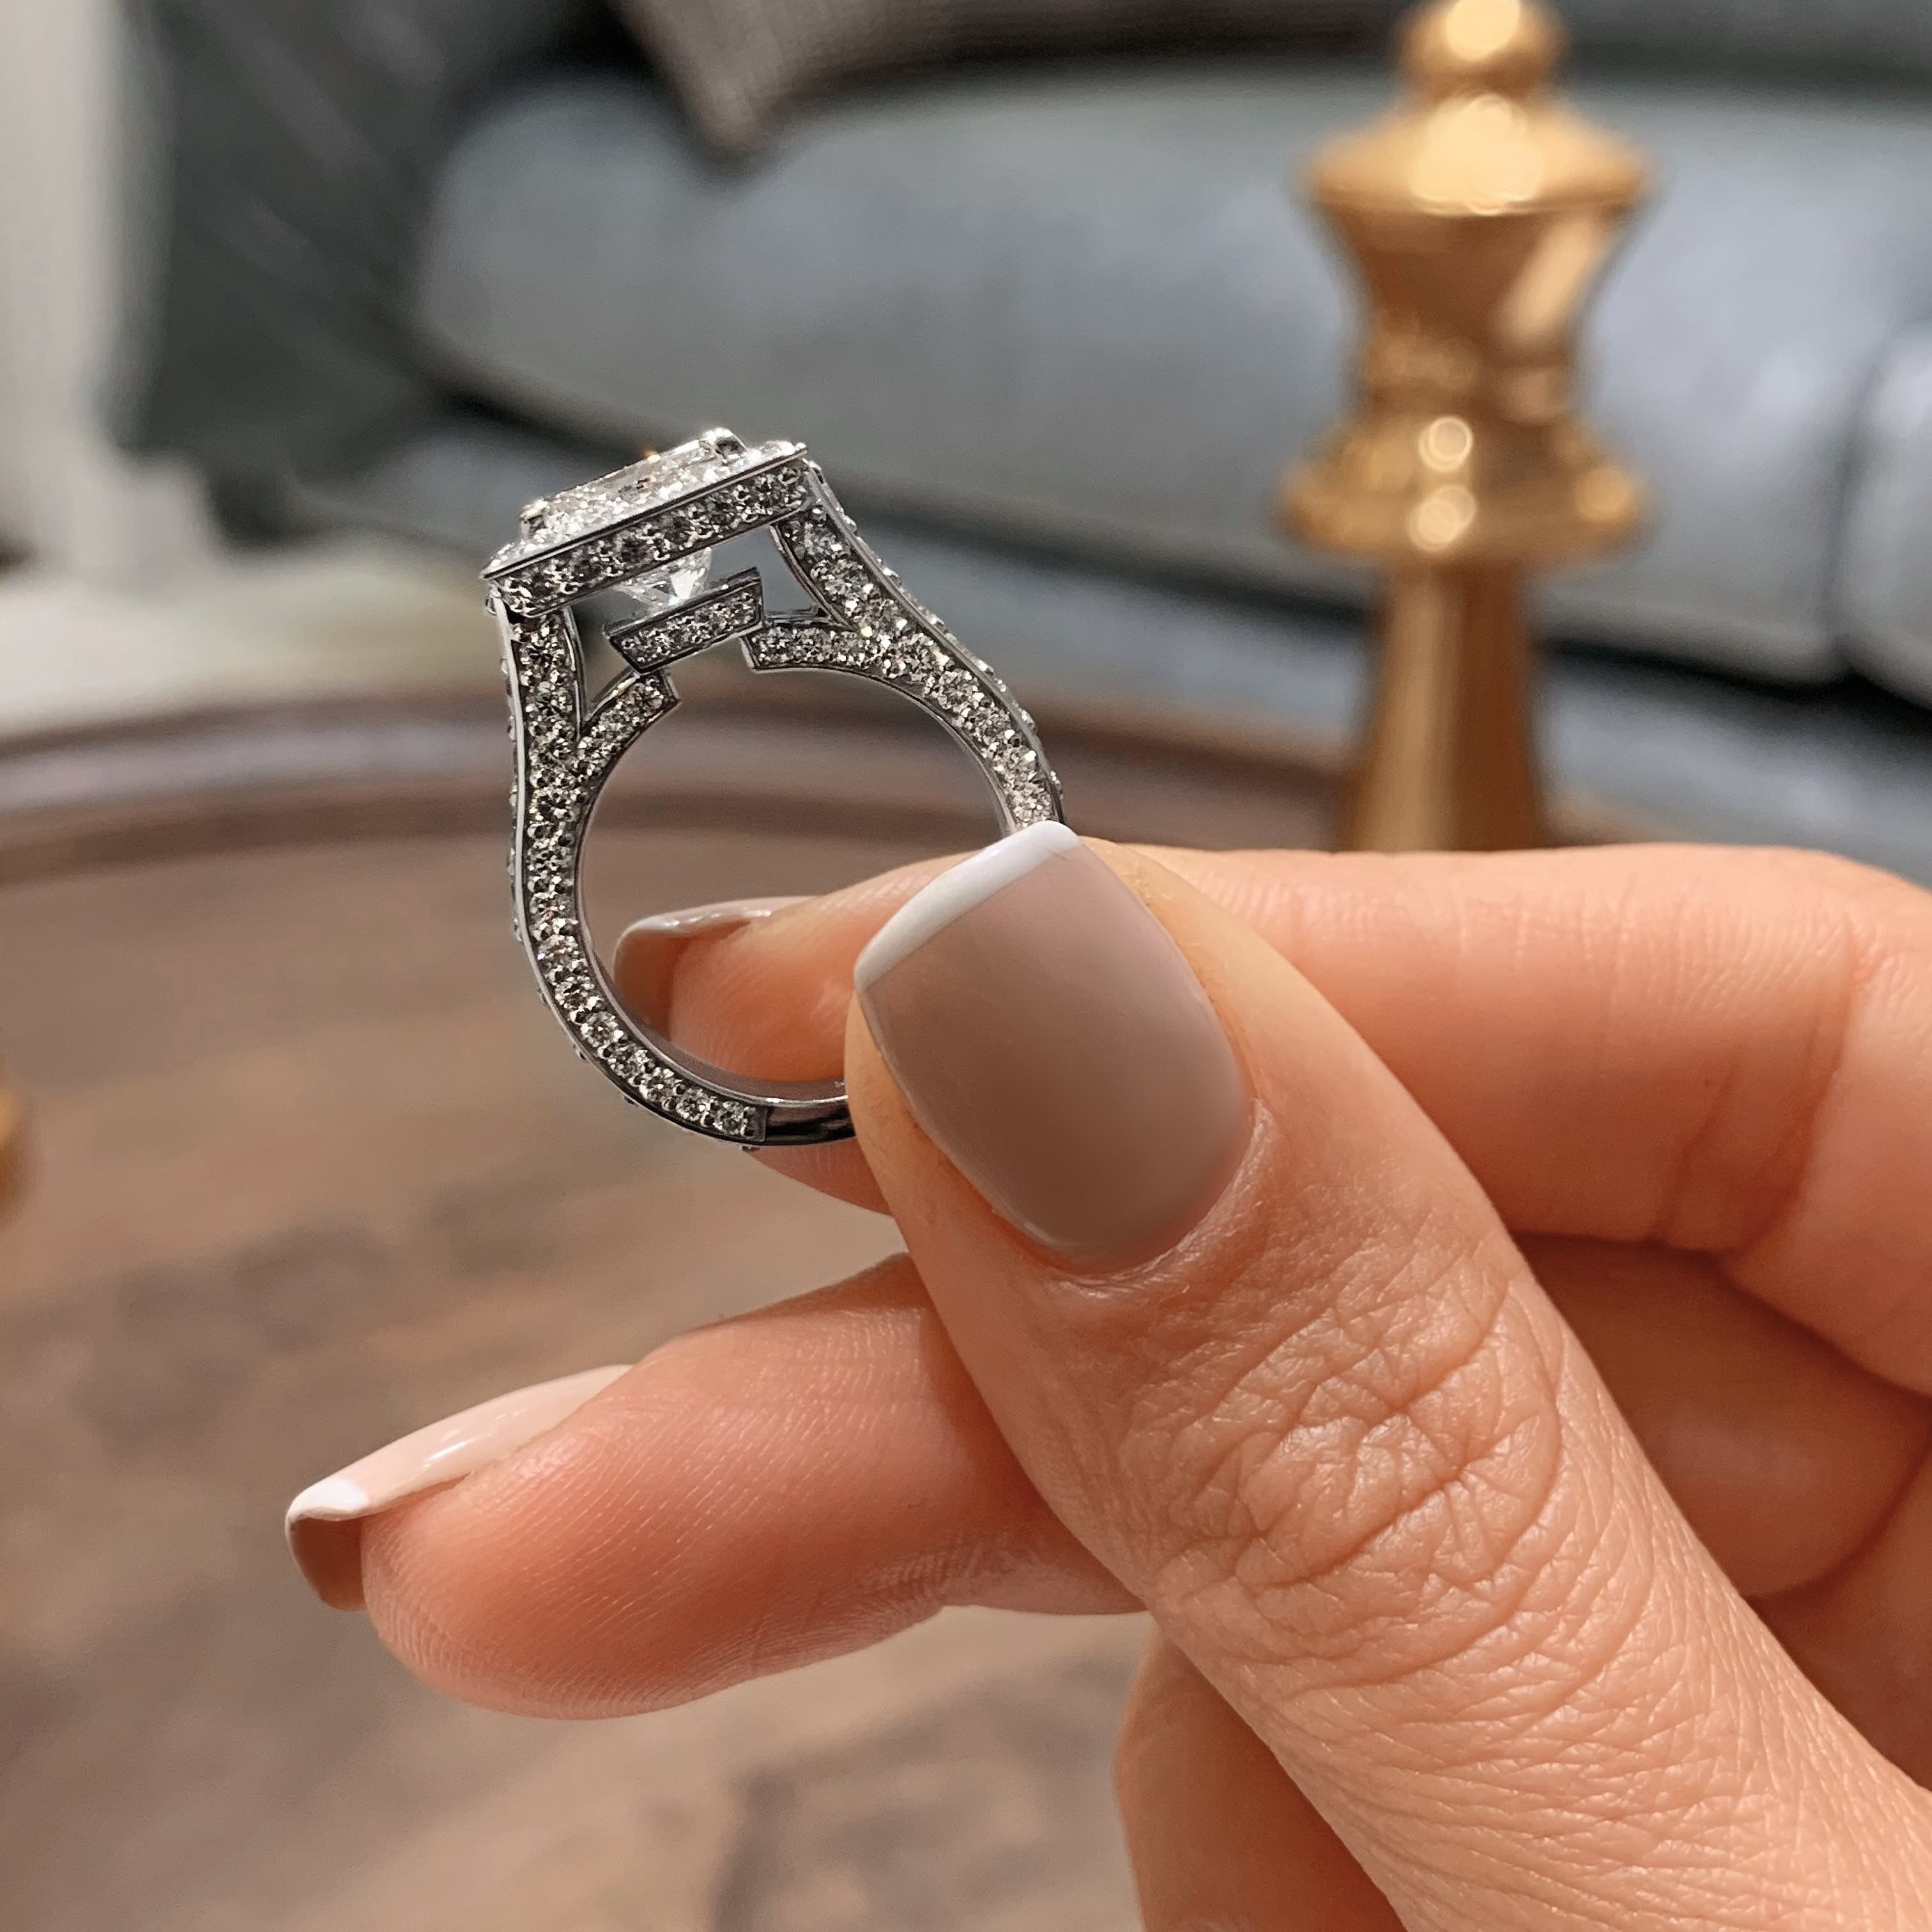 Freya Diamond Engagement Ring   (5 Carat) -Platinum